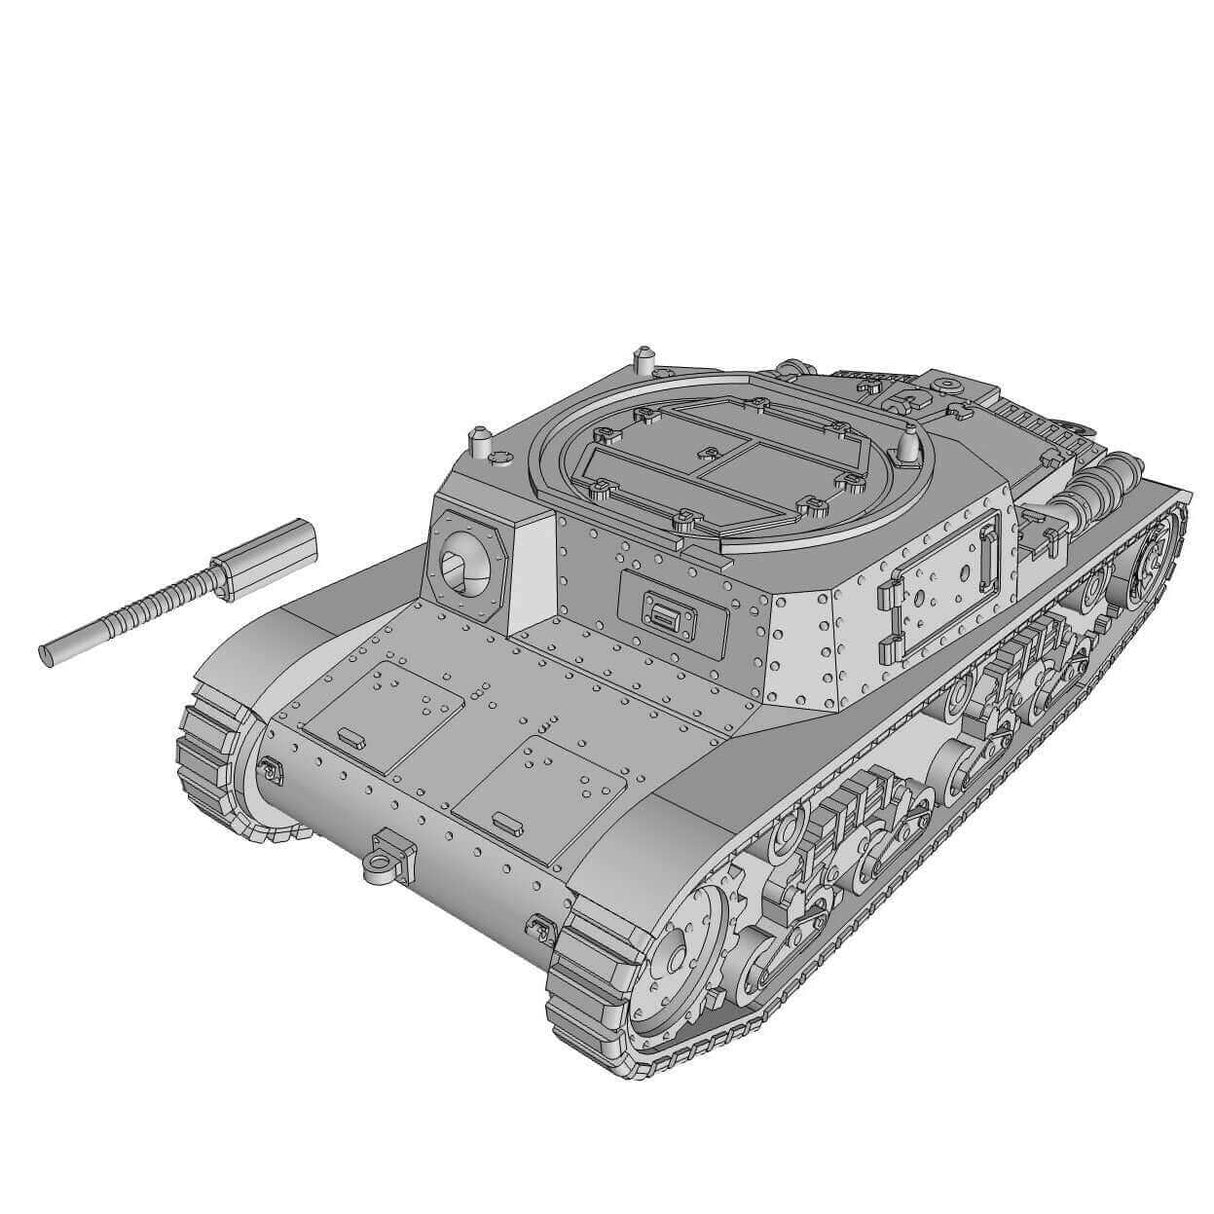 WWII Carro Commando M41 in Aktion Miniatur